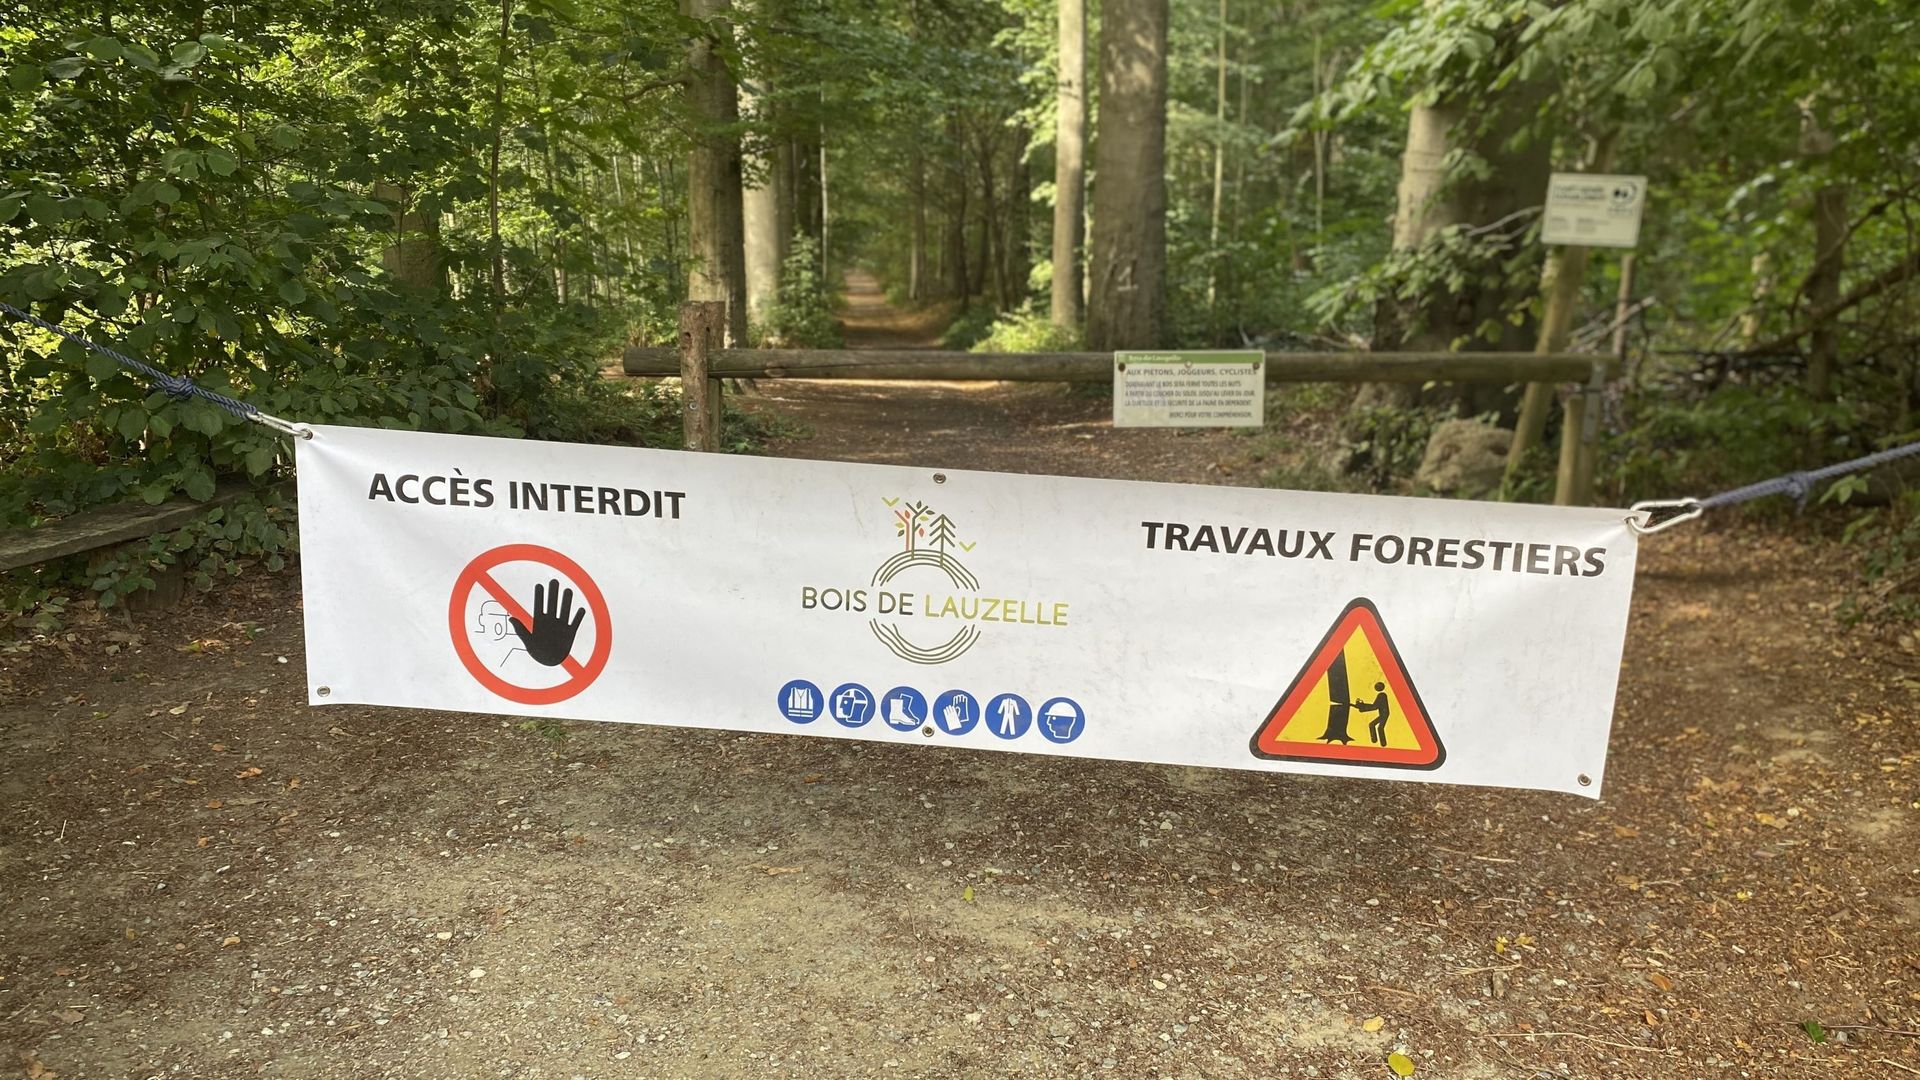 Pendant les coupes, l’accès au bois est interdit, pour des raisons de sécurité.